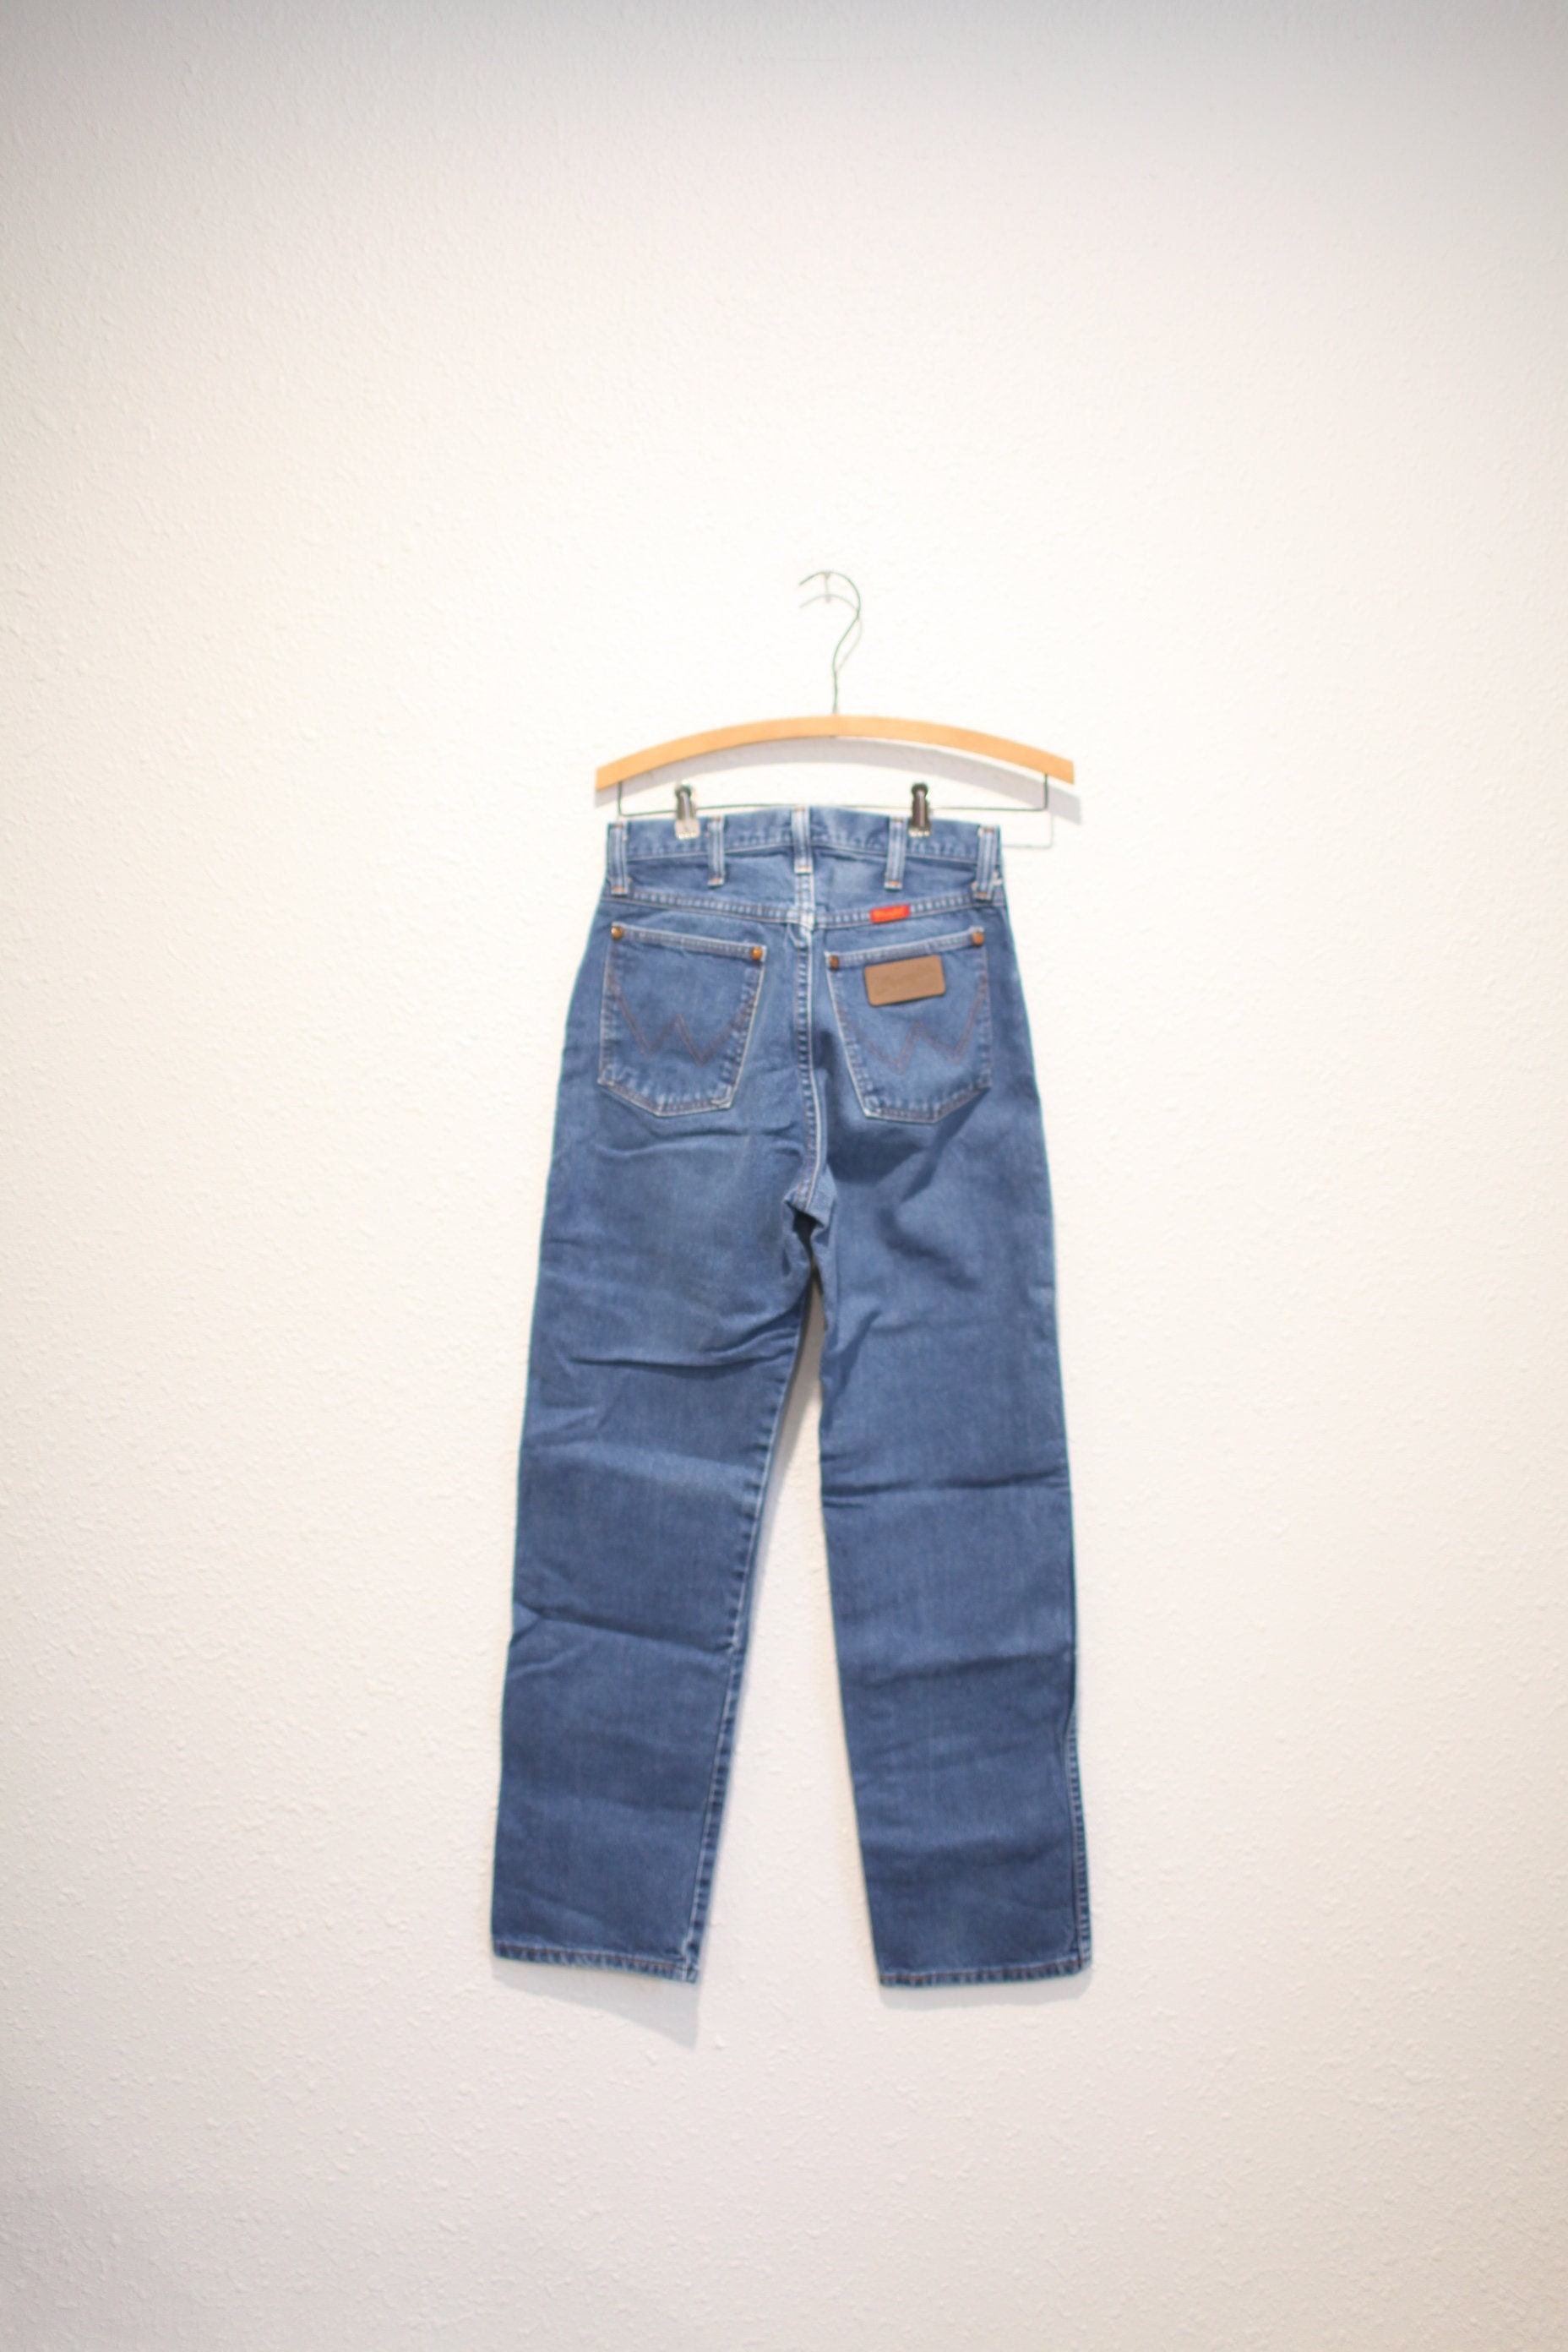 Vintage Wrangler 1980's Blue Jeans Denim 285 X 30 0303 - Etsy Hong Kong